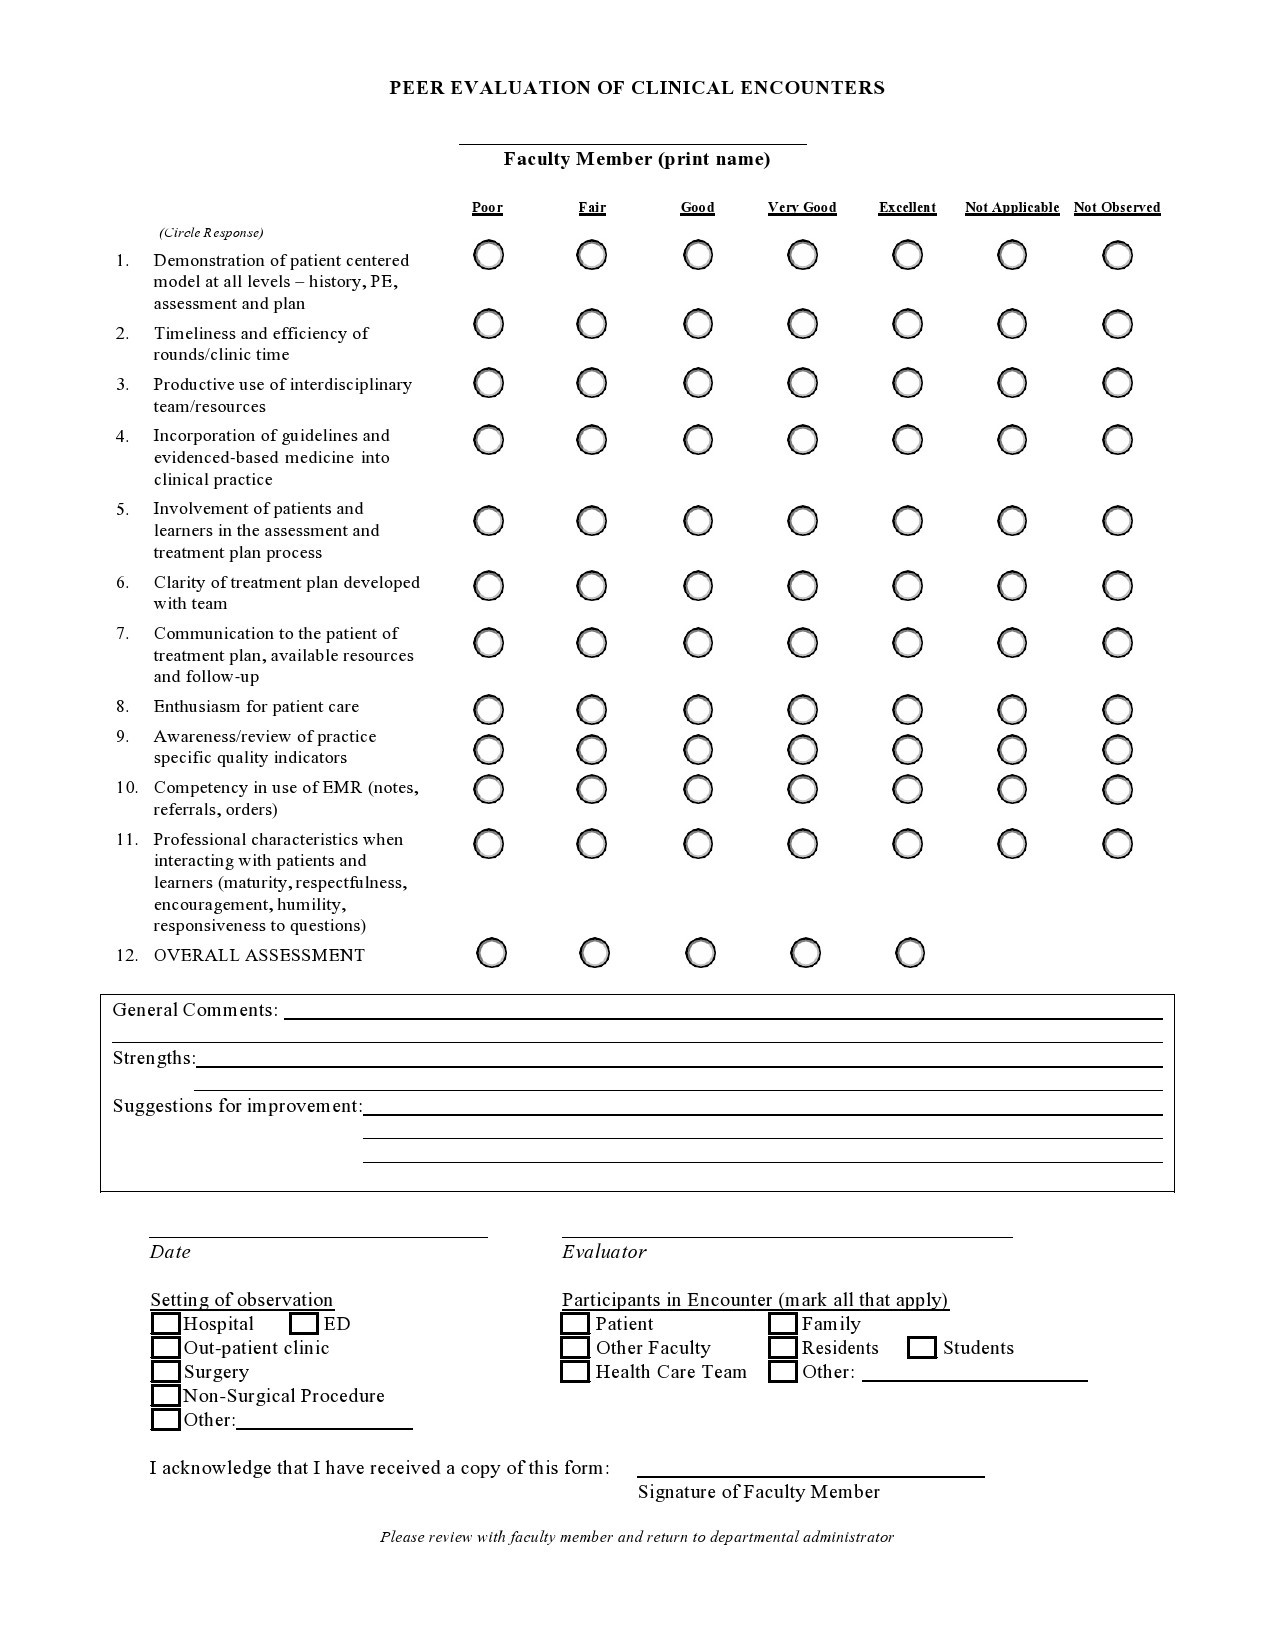 Free peer evaluation form 29